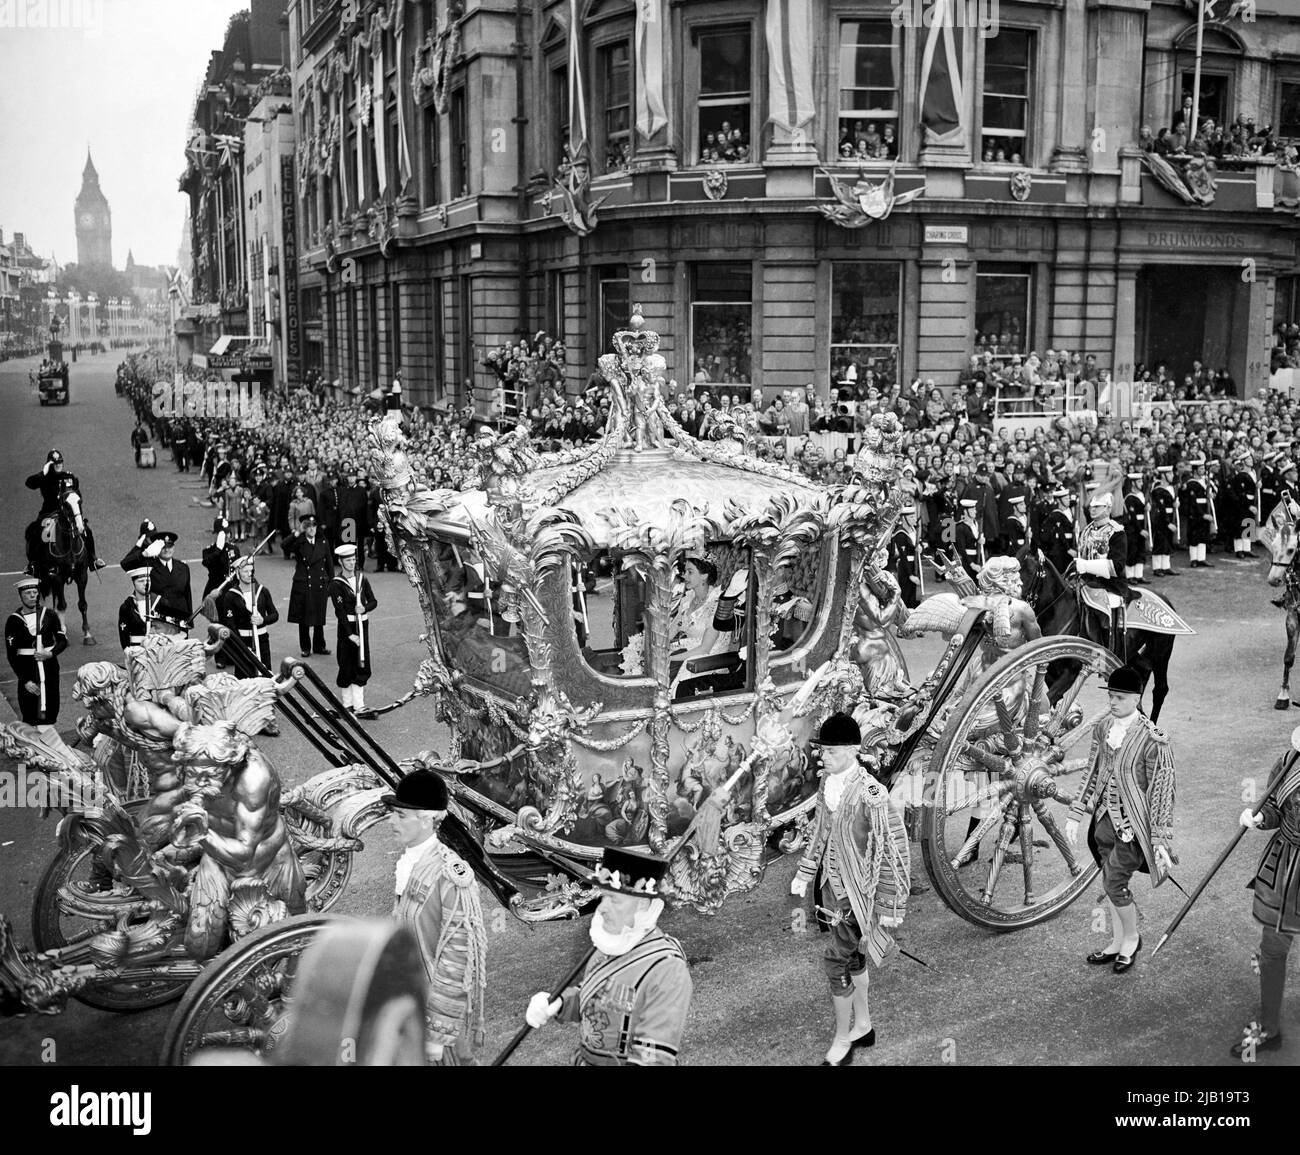 Photo du dossier datée du 2/6/1953 de la reine Elizabeth II manèges avec le duc d'Édimbourg dans l'autocar d'État à travers Trafalgar Square sur le chemin de Buckingham Palace à l'abbaye de Westminster pour son couronnement. Le début des célébrations du Jubilé de la Reine marque un anniversaire important pour le monarque - sa Journée du couronnement. Il y a soixante-neuf ans, Elizabeth II a été couronnée lors d'une cérémonie religieuse organisée sur 2 juin 1953 dans les environs historiques de l'abbaye de Westminster et célébrée avec des fêtes de rue à travers le pays. Date de publication : jeudi 2 juin 2022. Banque D'Images